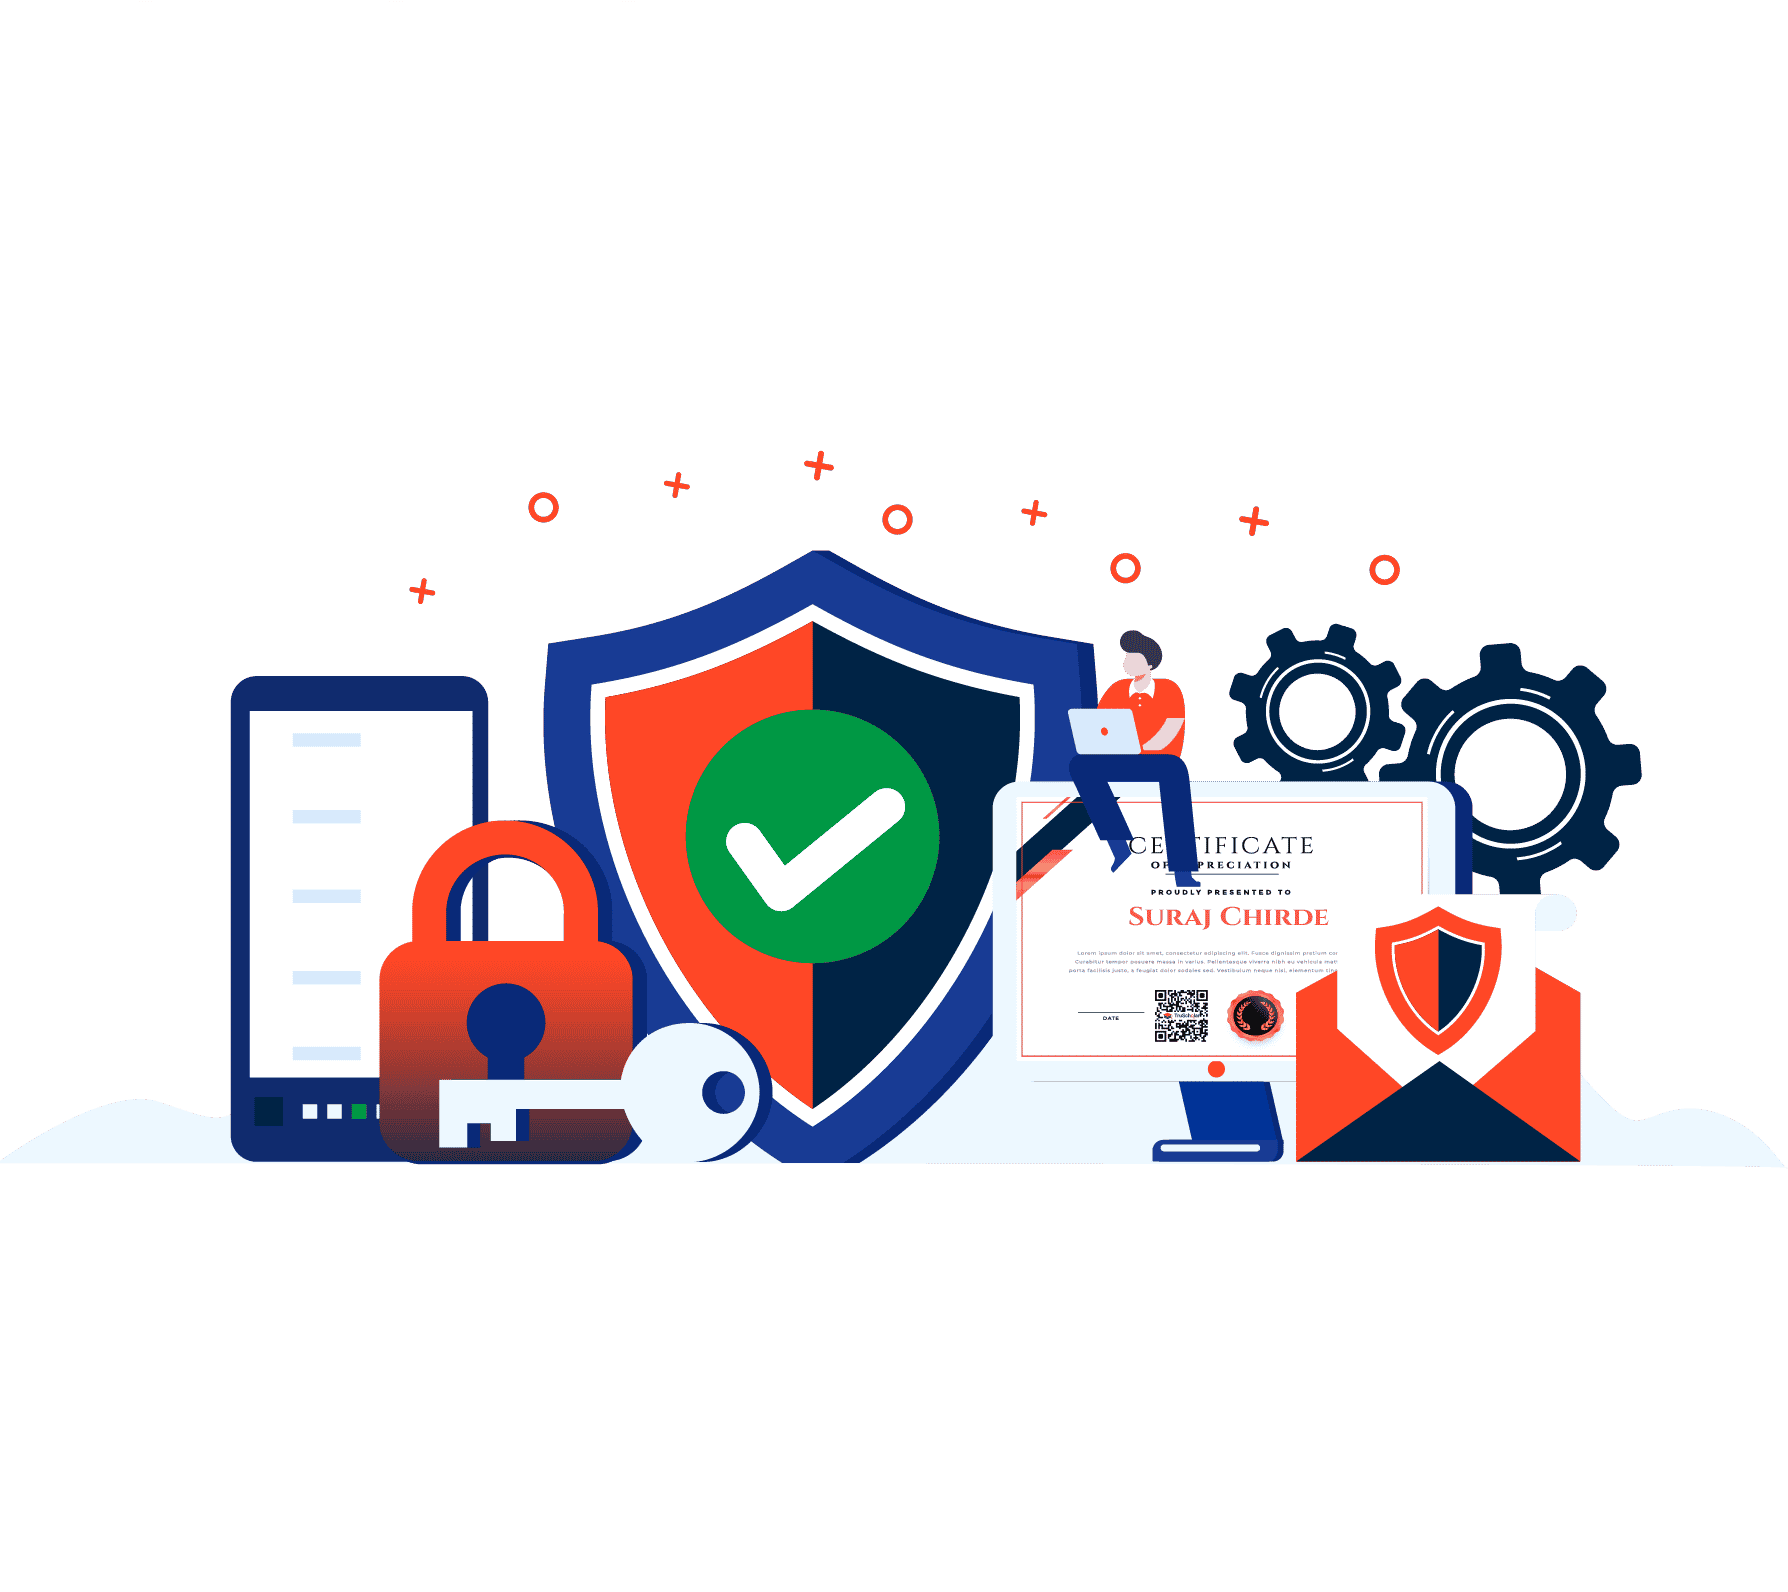 100% secure digital certificate & badges in digital credentials platform